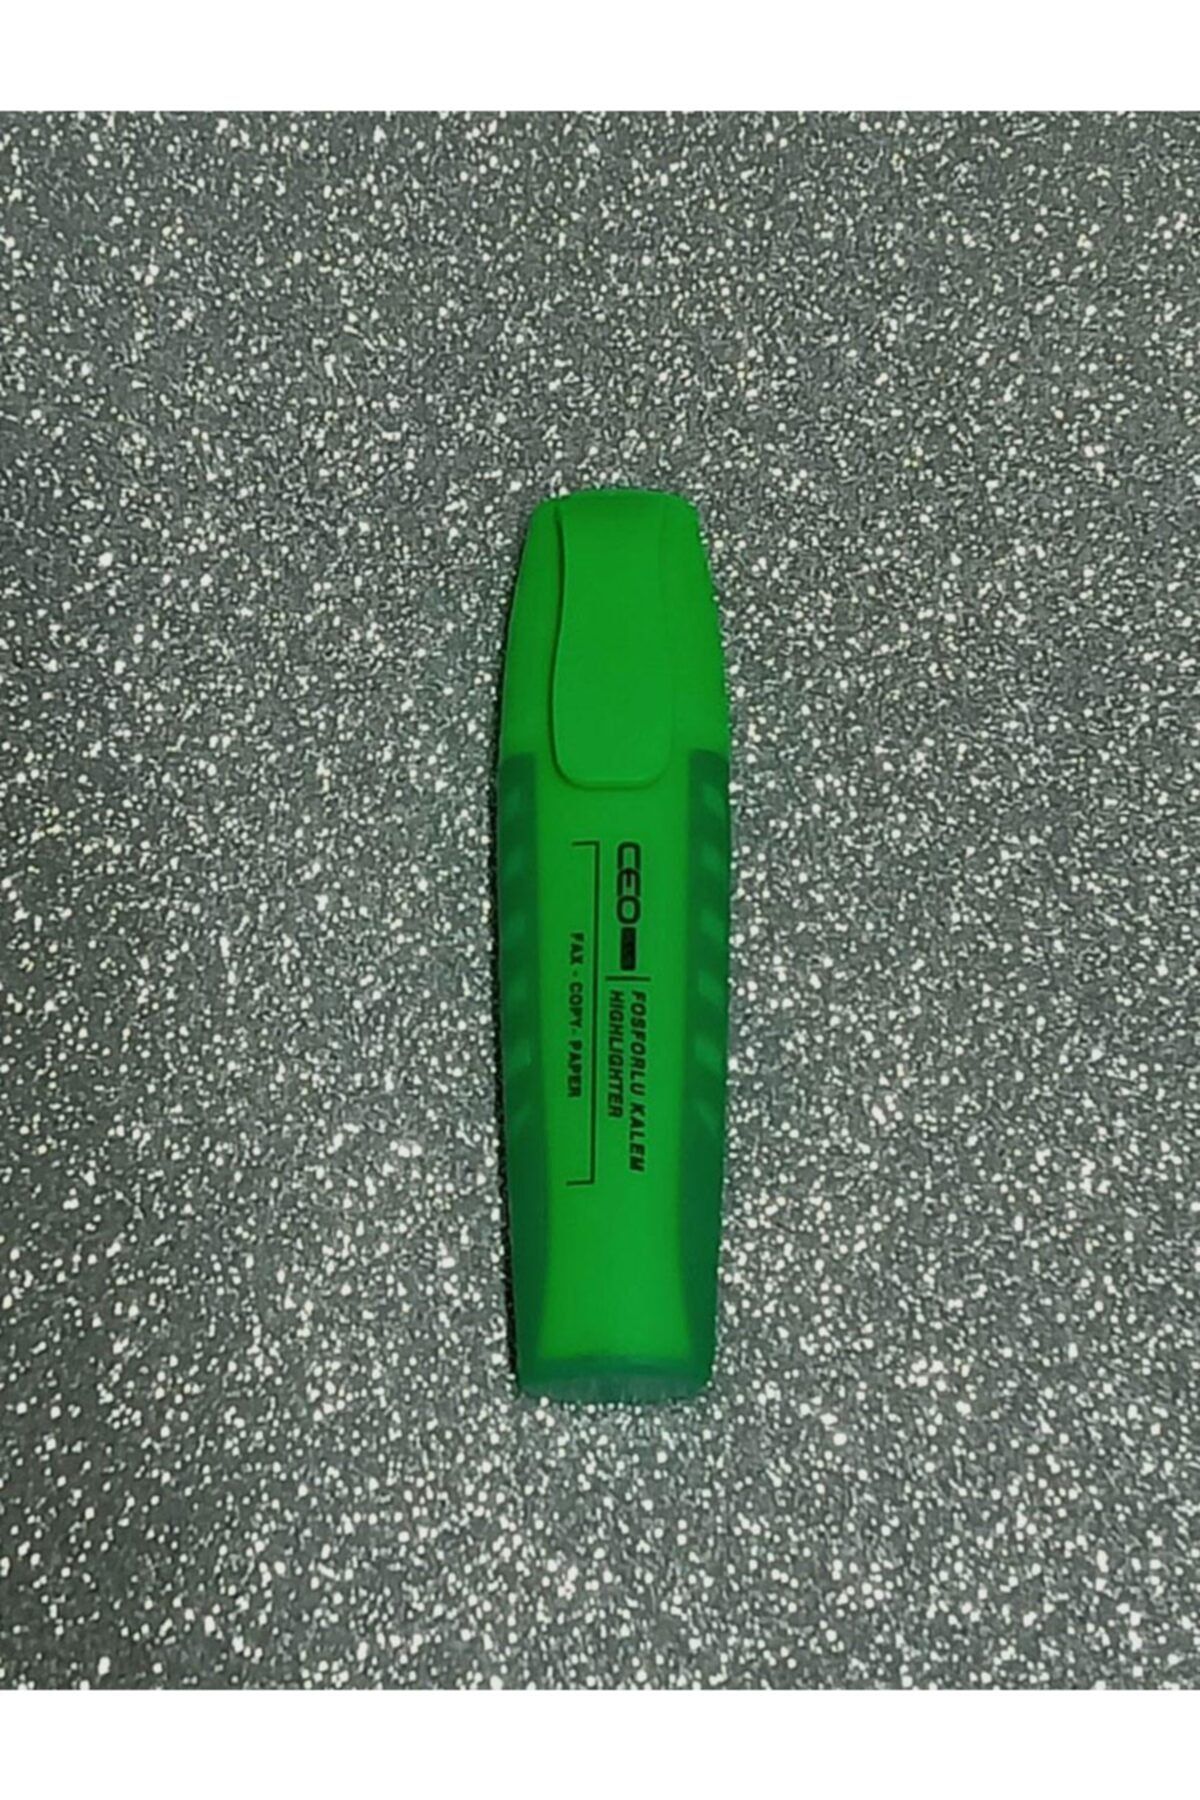 Ceo Neon Yeşil Fosforlu Kalem